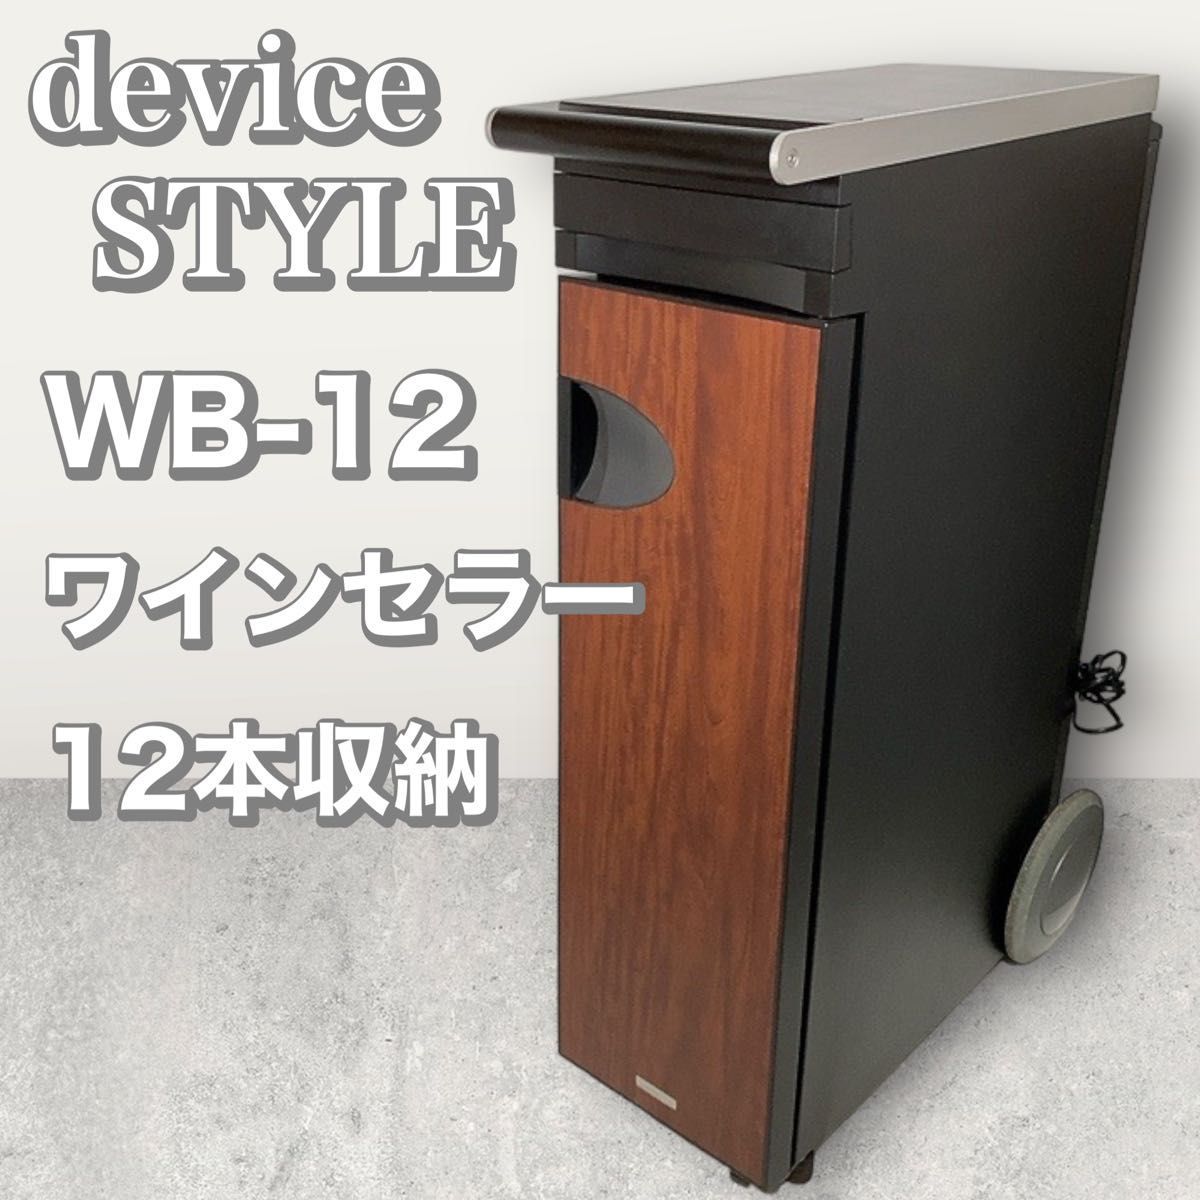 日本初の devicestyle デバイスタイル WB-12 ワインセラー 木目調 12本